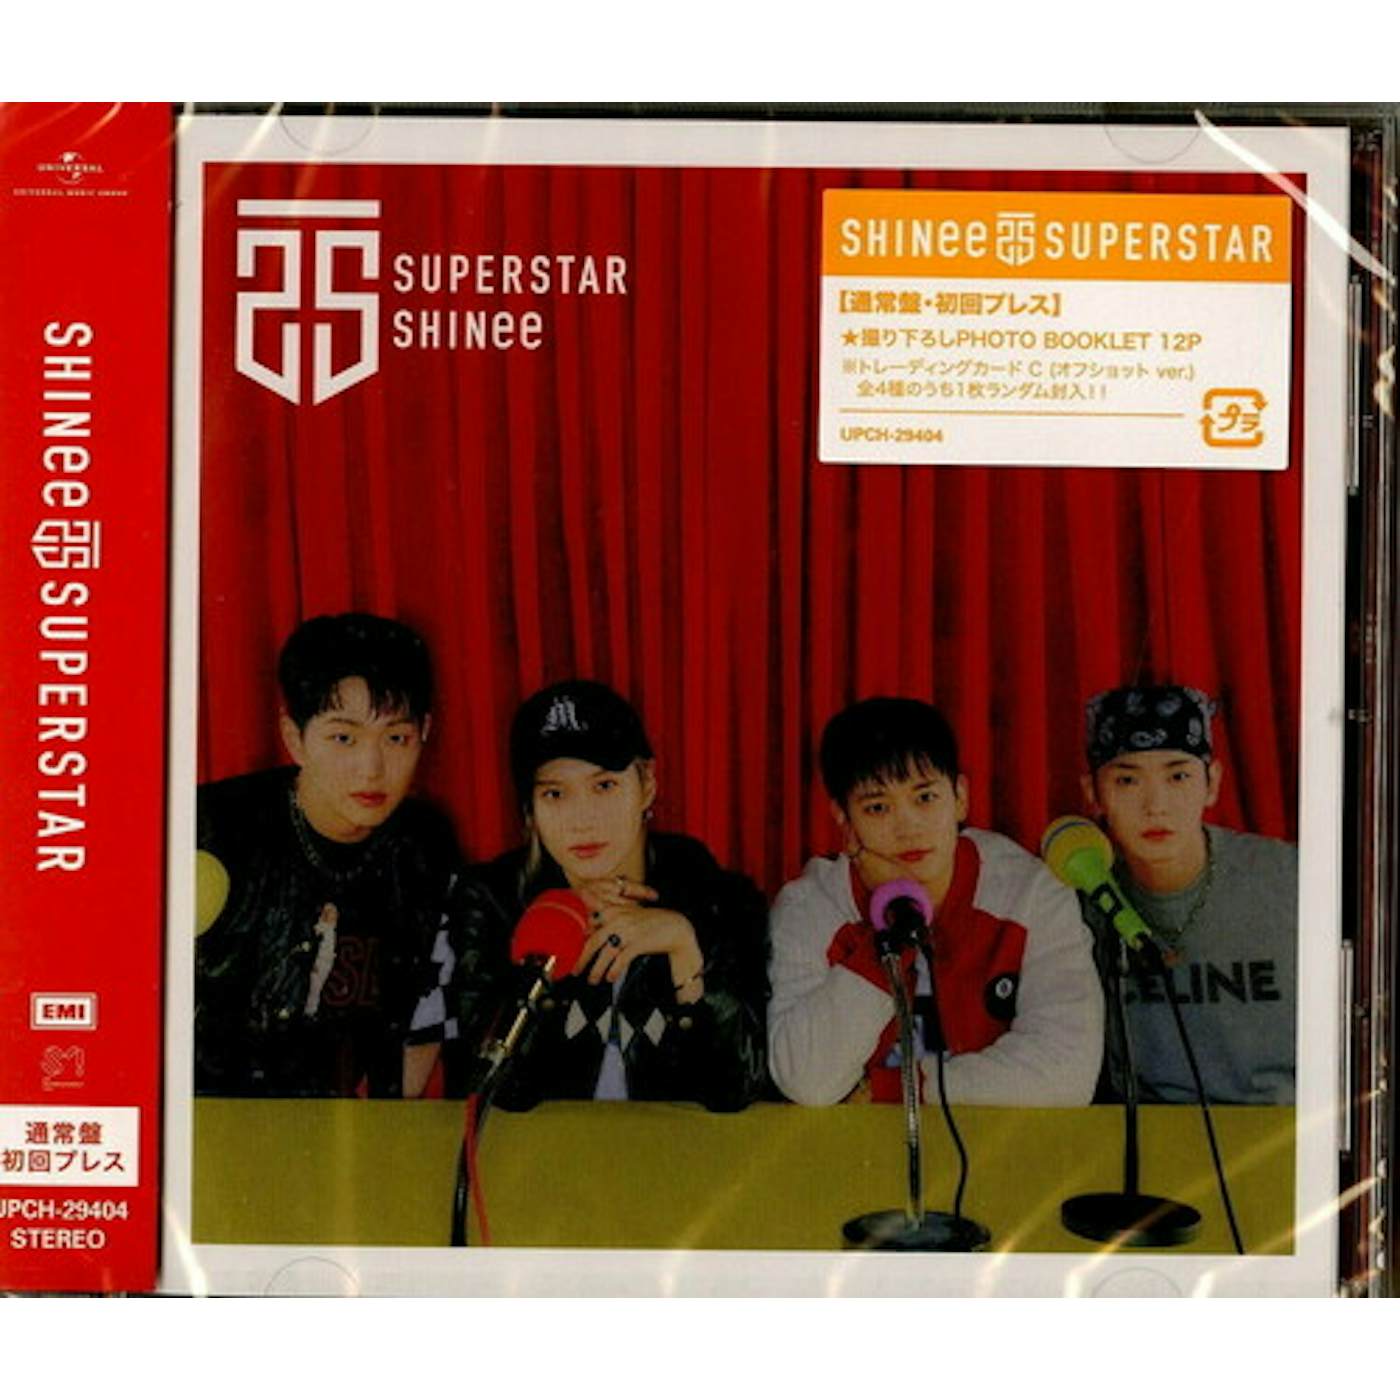 SHINee SUPERSTAR CD